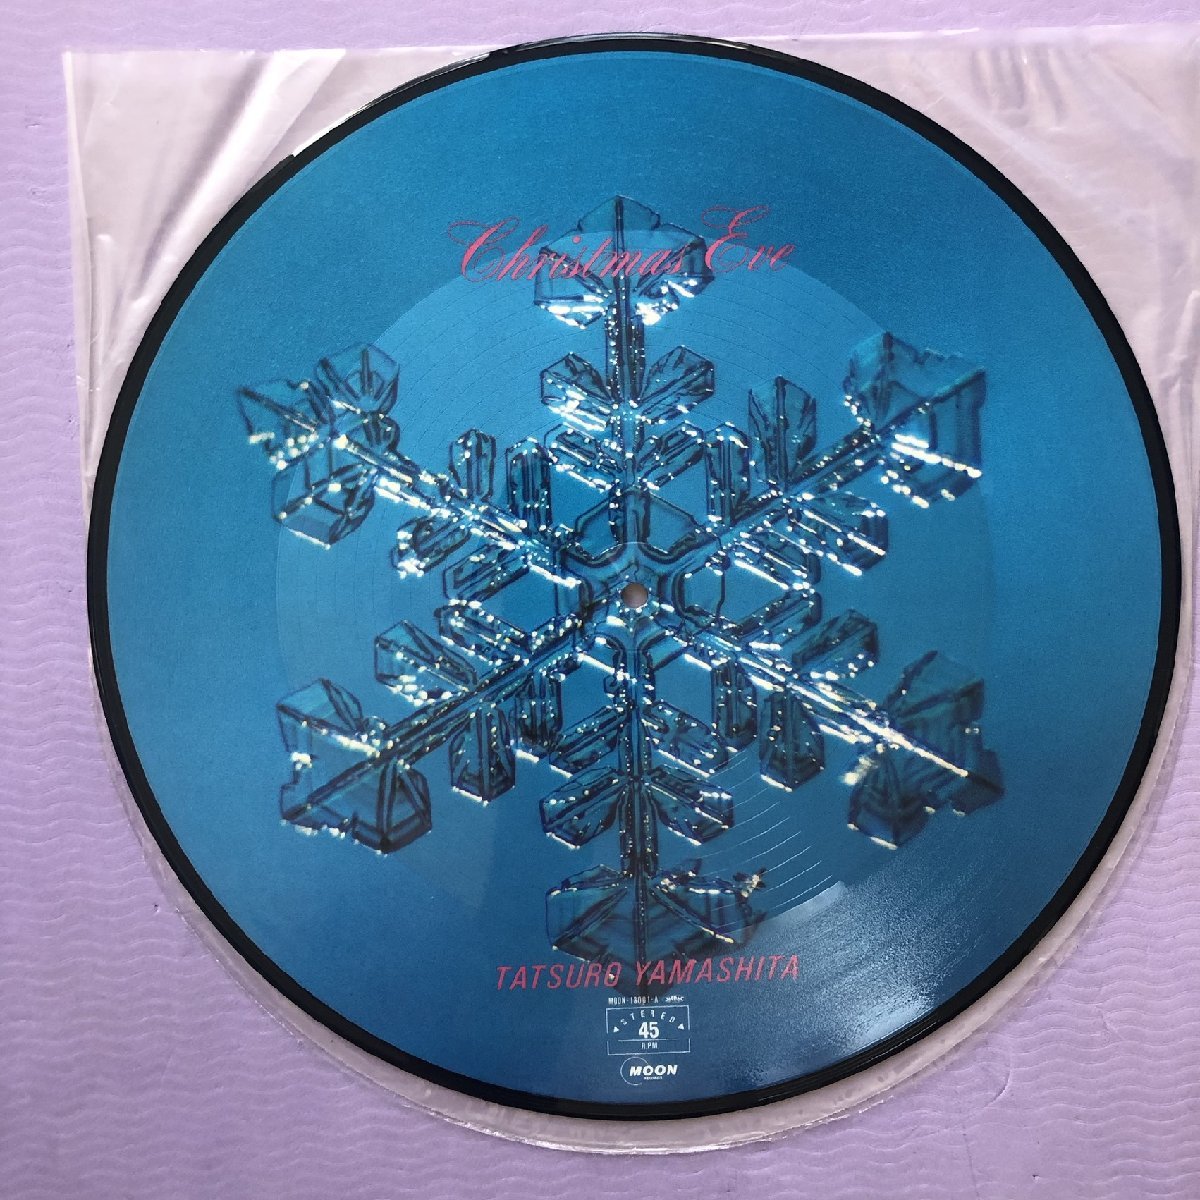 傷なし美盤 1983年 オリジナルリリース盤 山下達郎 12''EPピクチャーレコード Christmas Eve / White Christmas 帯付 限定版の画像9